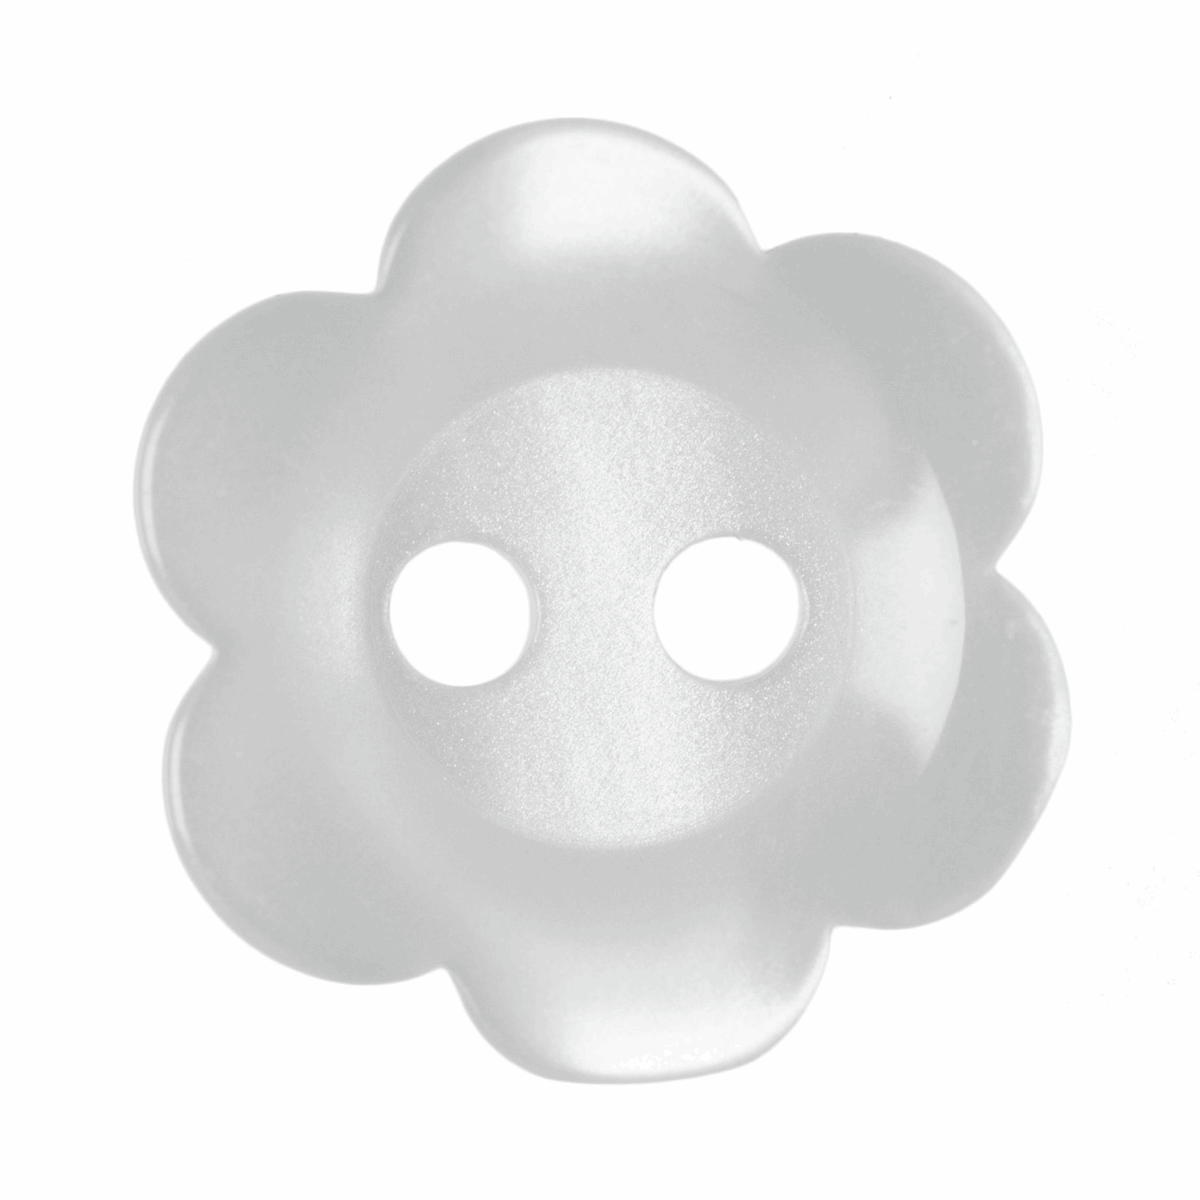 Hemline White Flower Button - 12.5mm (Pack of 12)